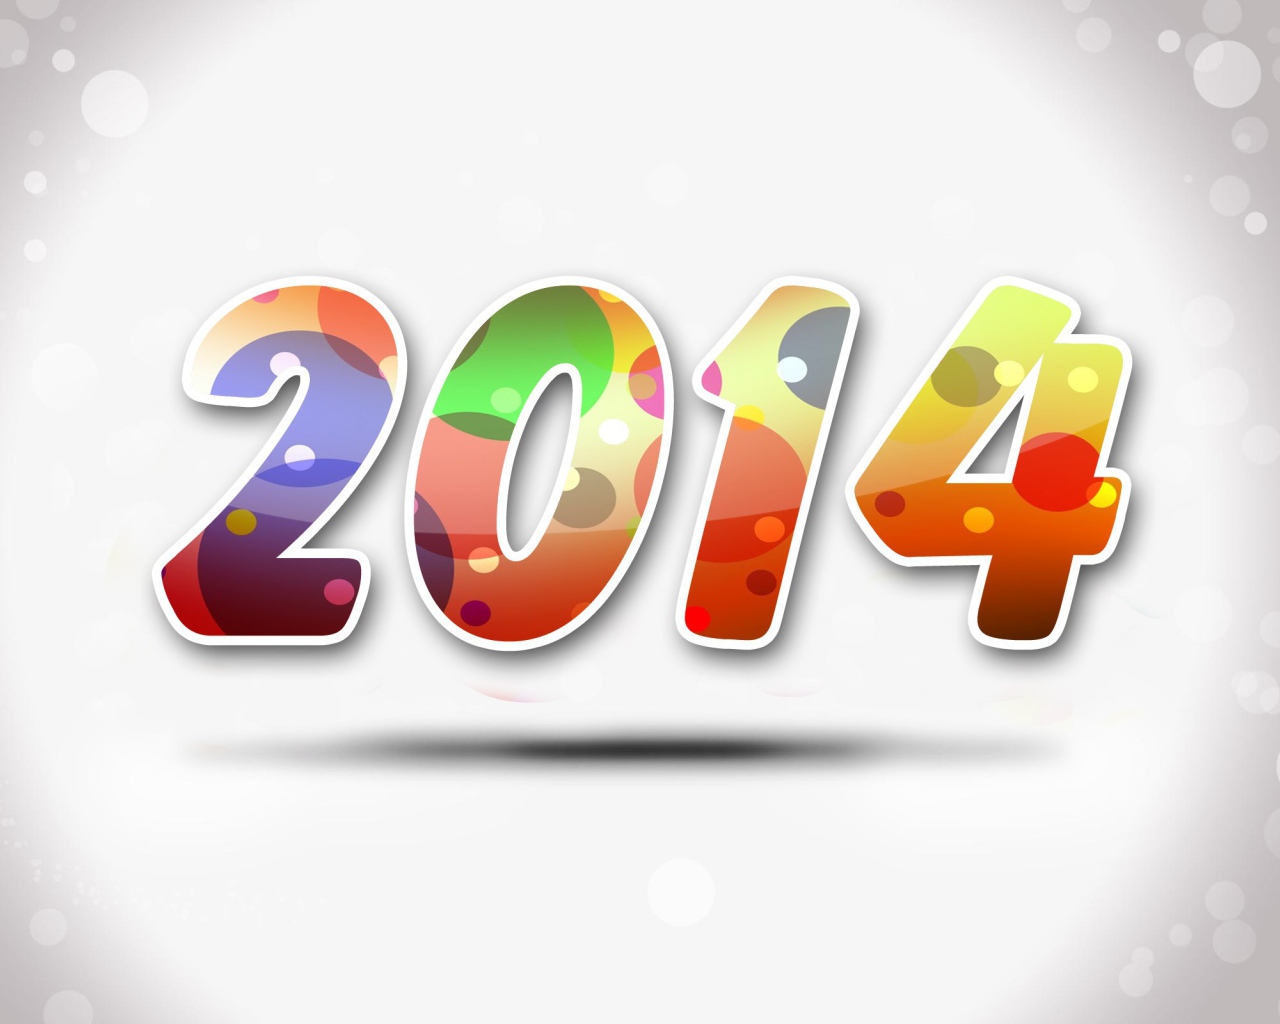 Новый год 2014, красивая картинка